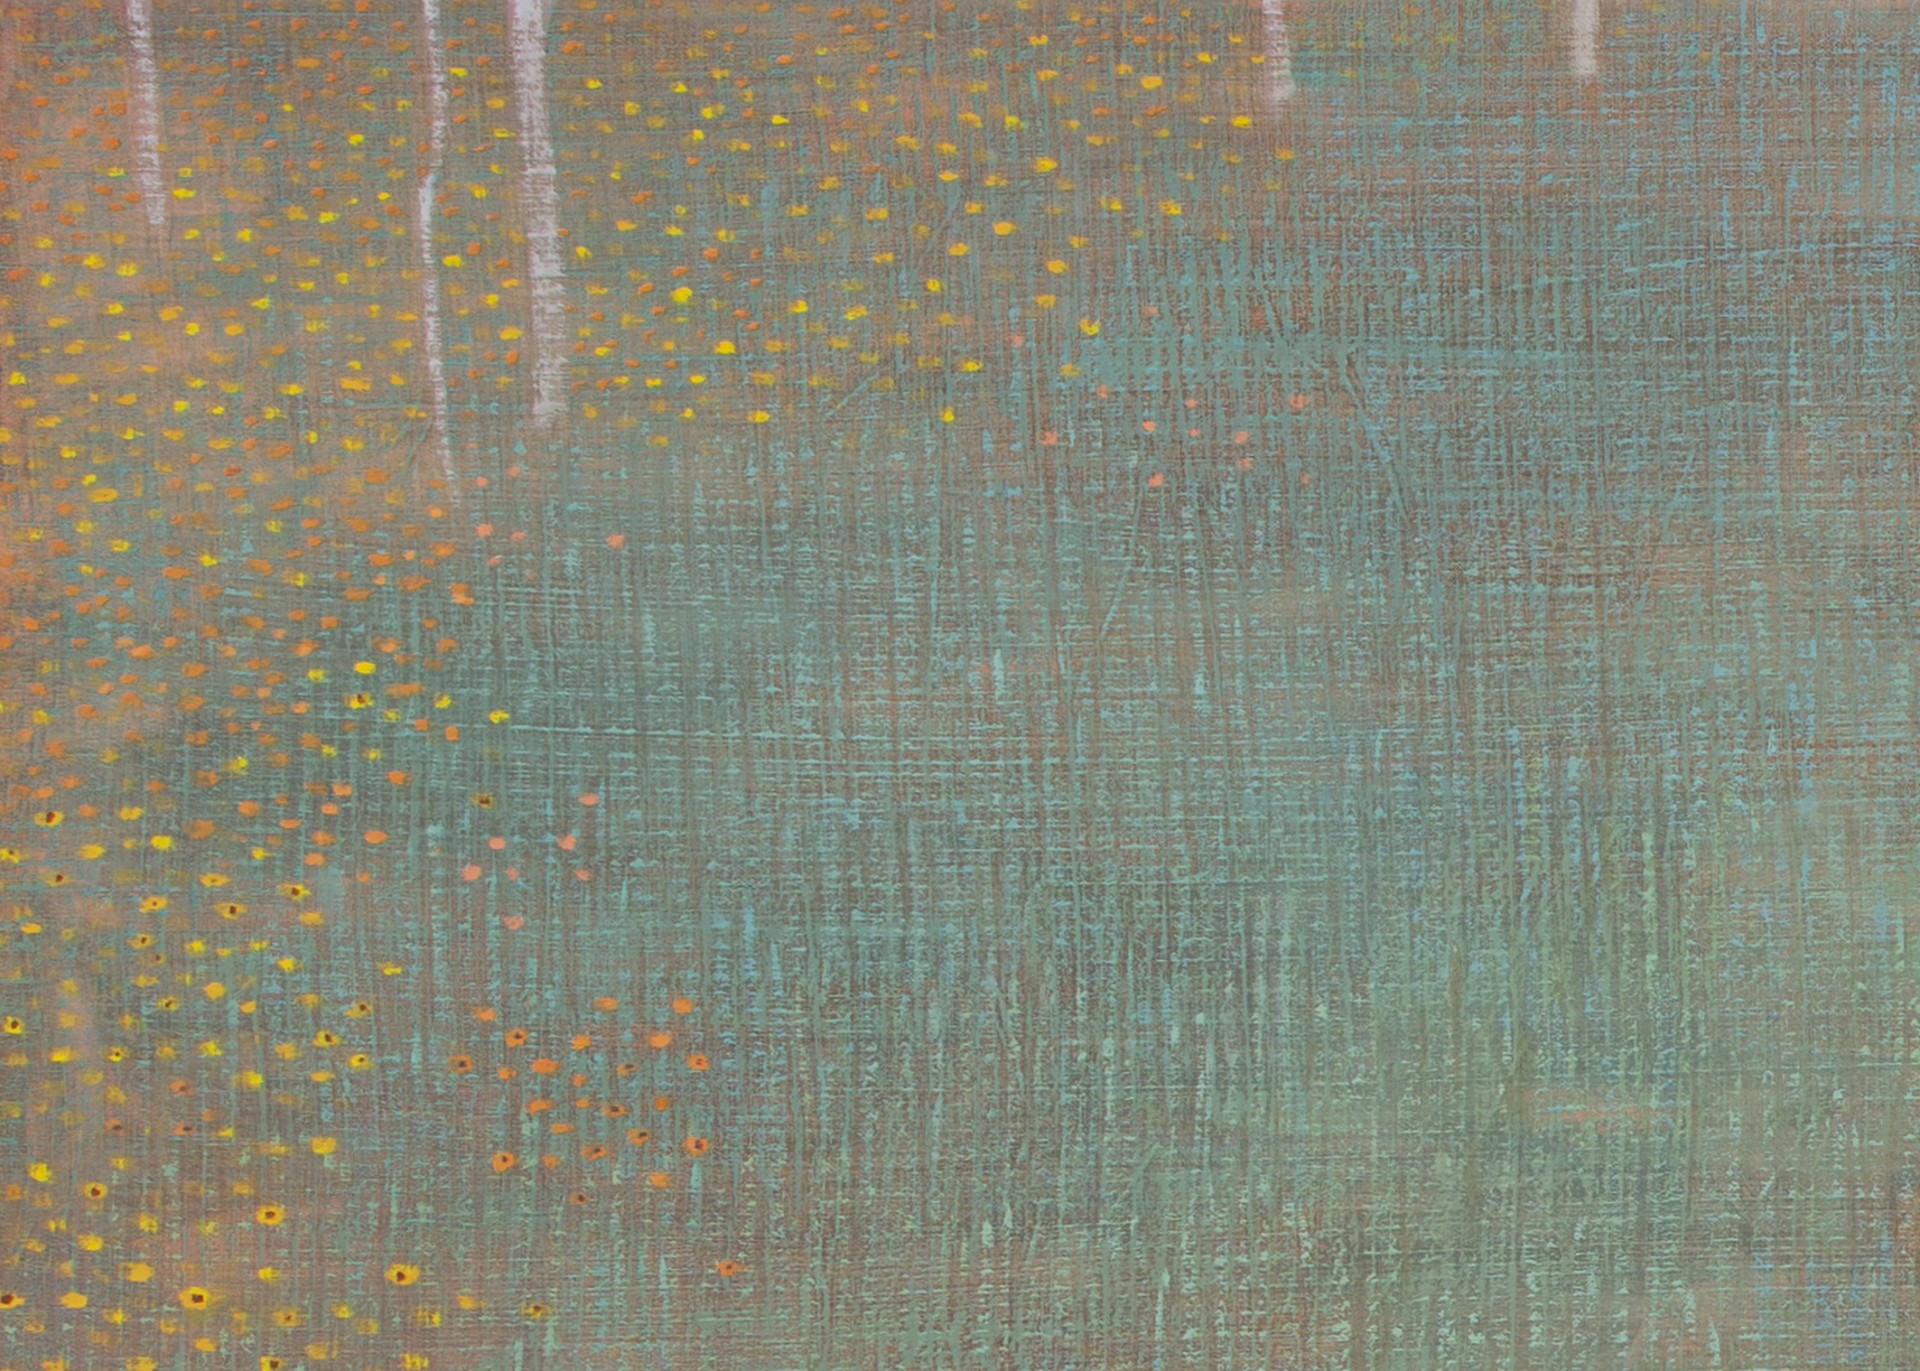 Dusk in the Wildflower Meadow by David Grossmann